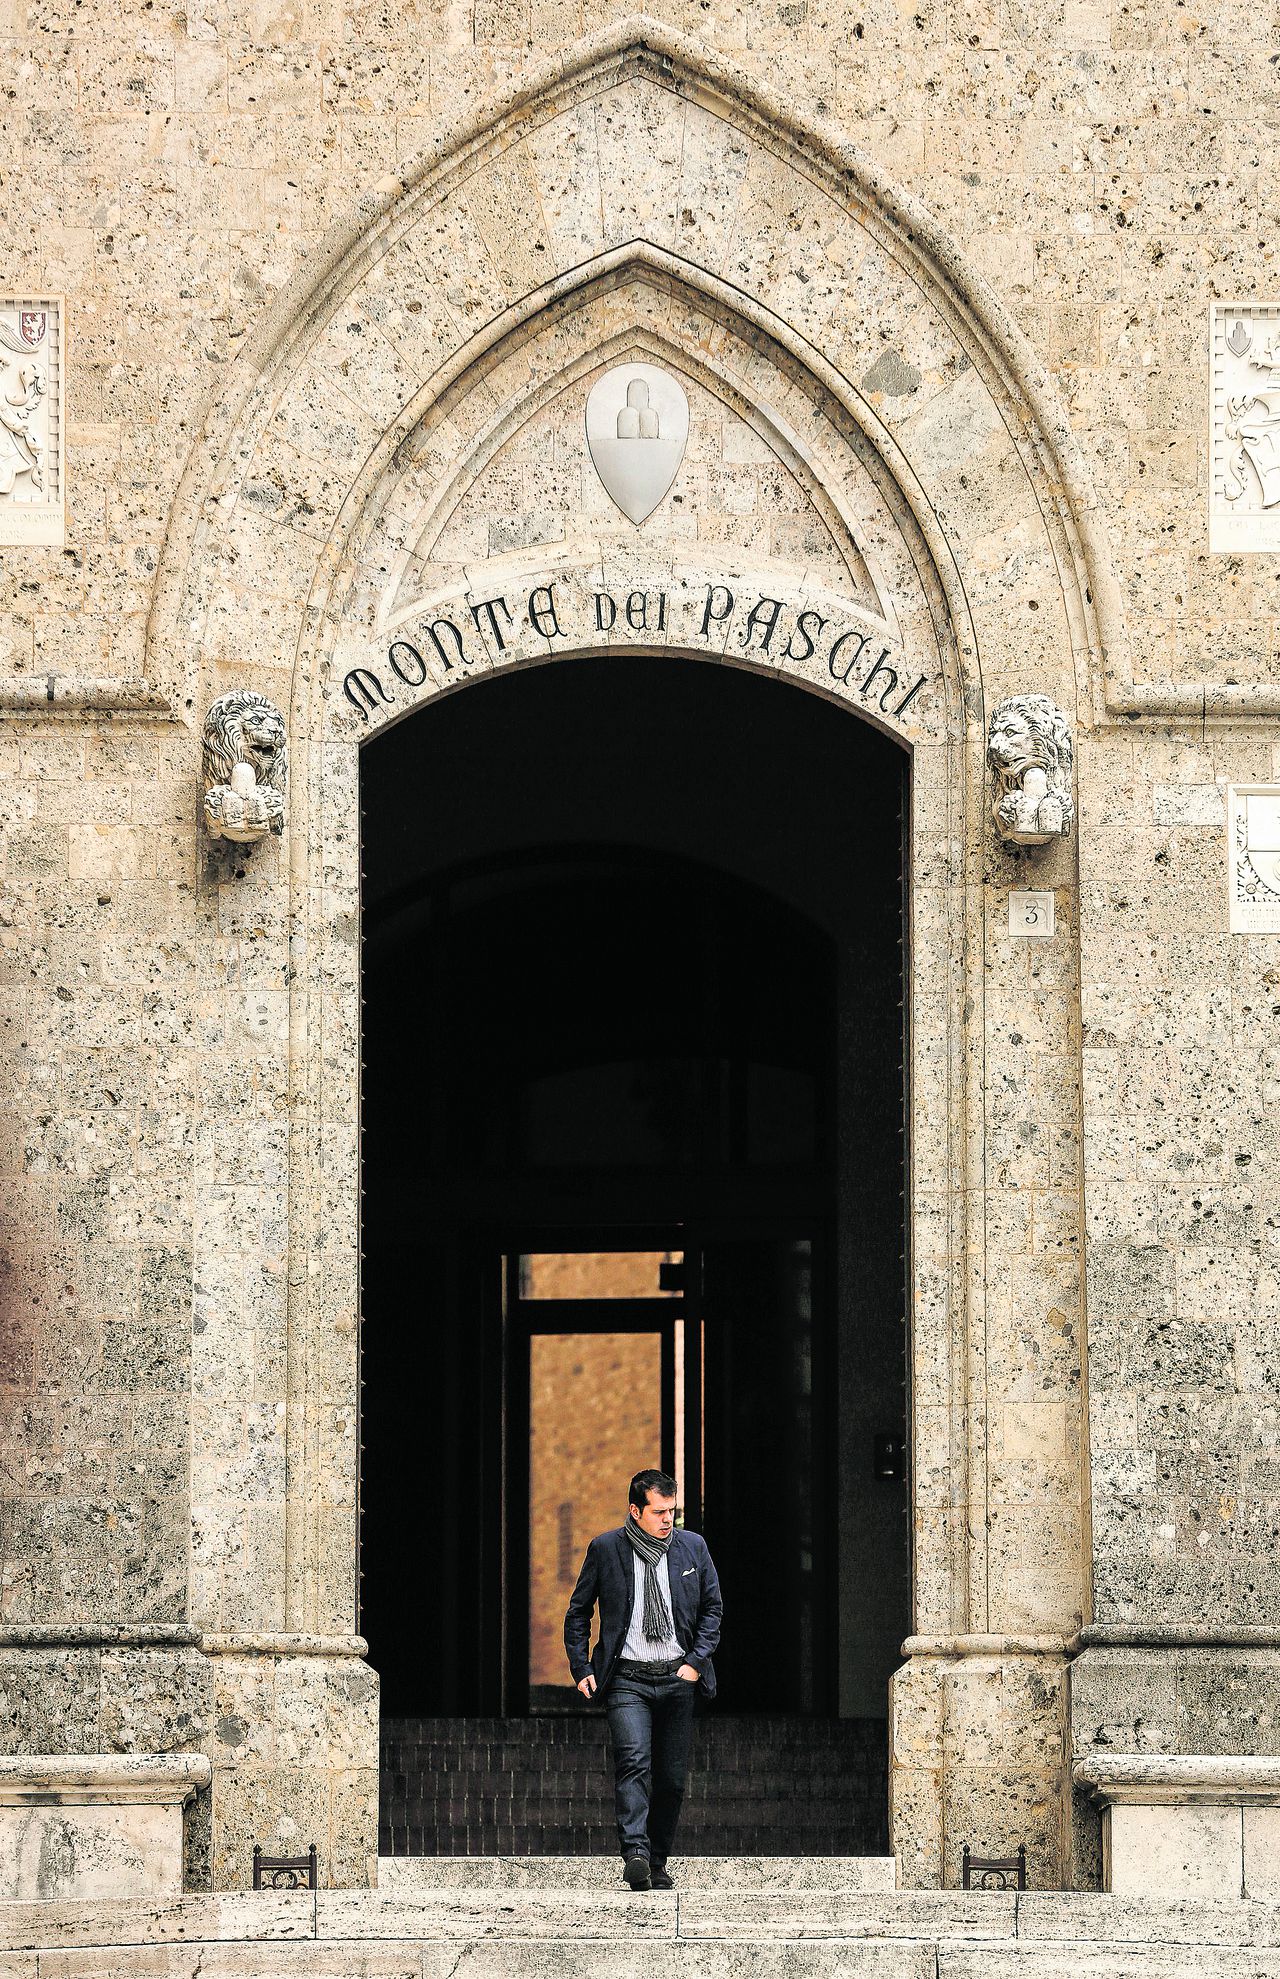 Vestiging van de Italiaanse bank Monte dei Paschi di Siena in Sienna.